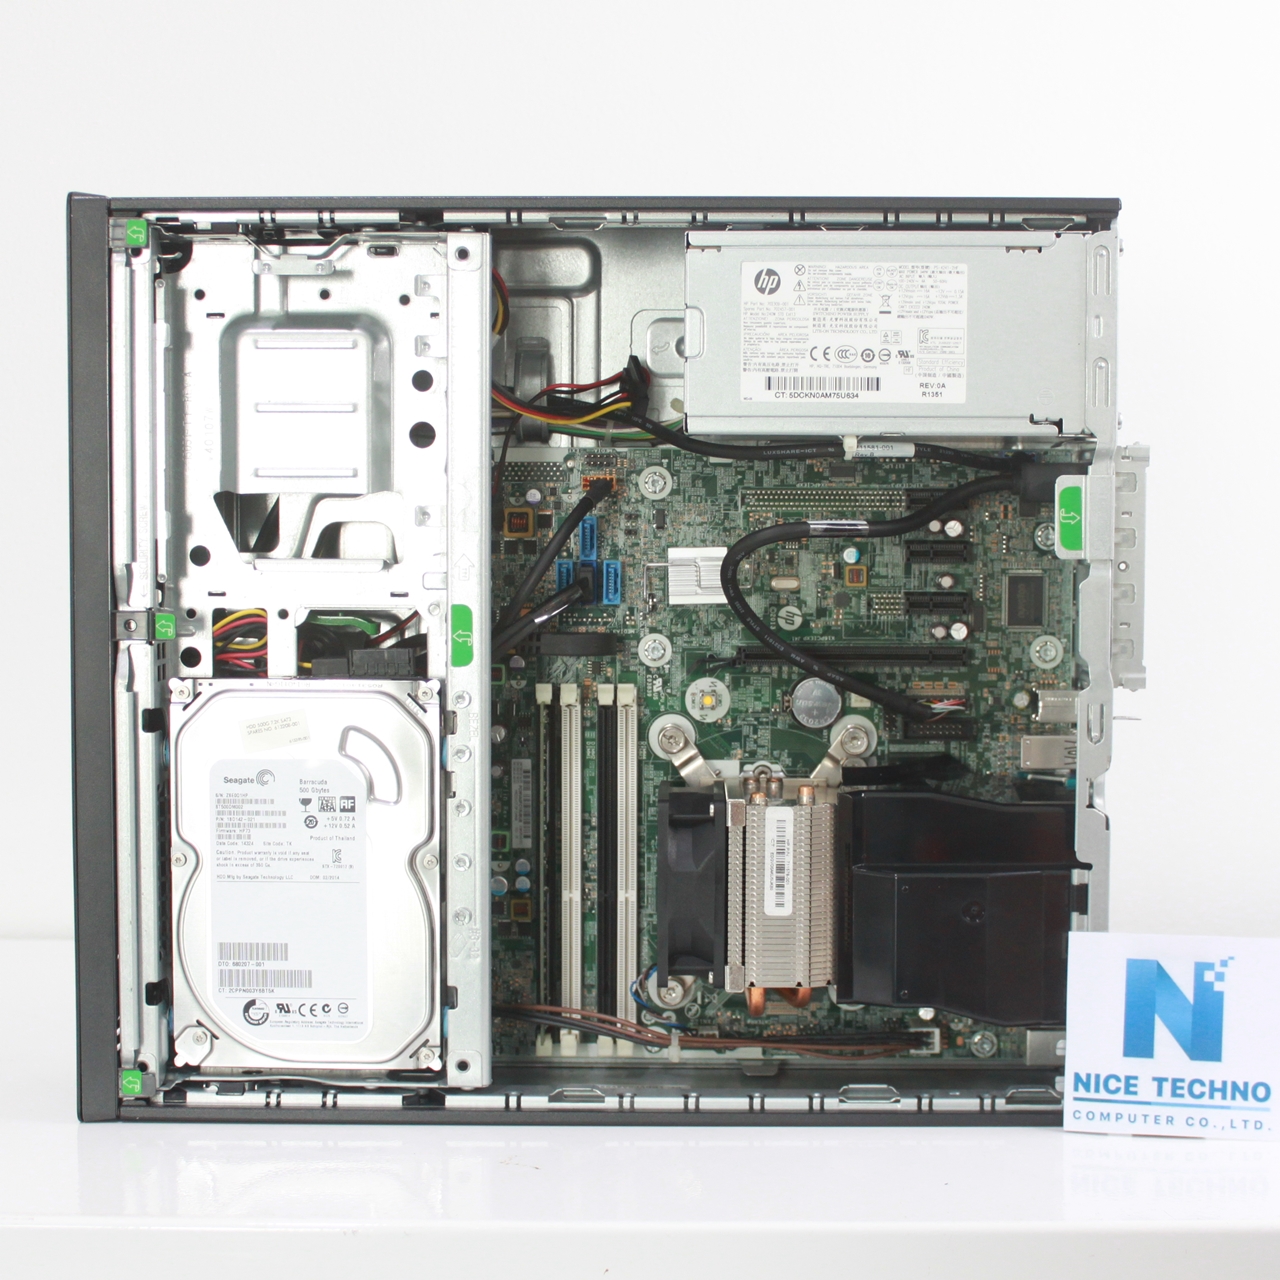 มุมมองเพิ่มเติมของสินค้า HP Prodesk 600 G1 SFF Core i5-4670 3.4 GHz/ RAM DDR3 4 GB/ HDD 500 GB/ License Win 8.1 Pro (Up to Win 10 Pro)